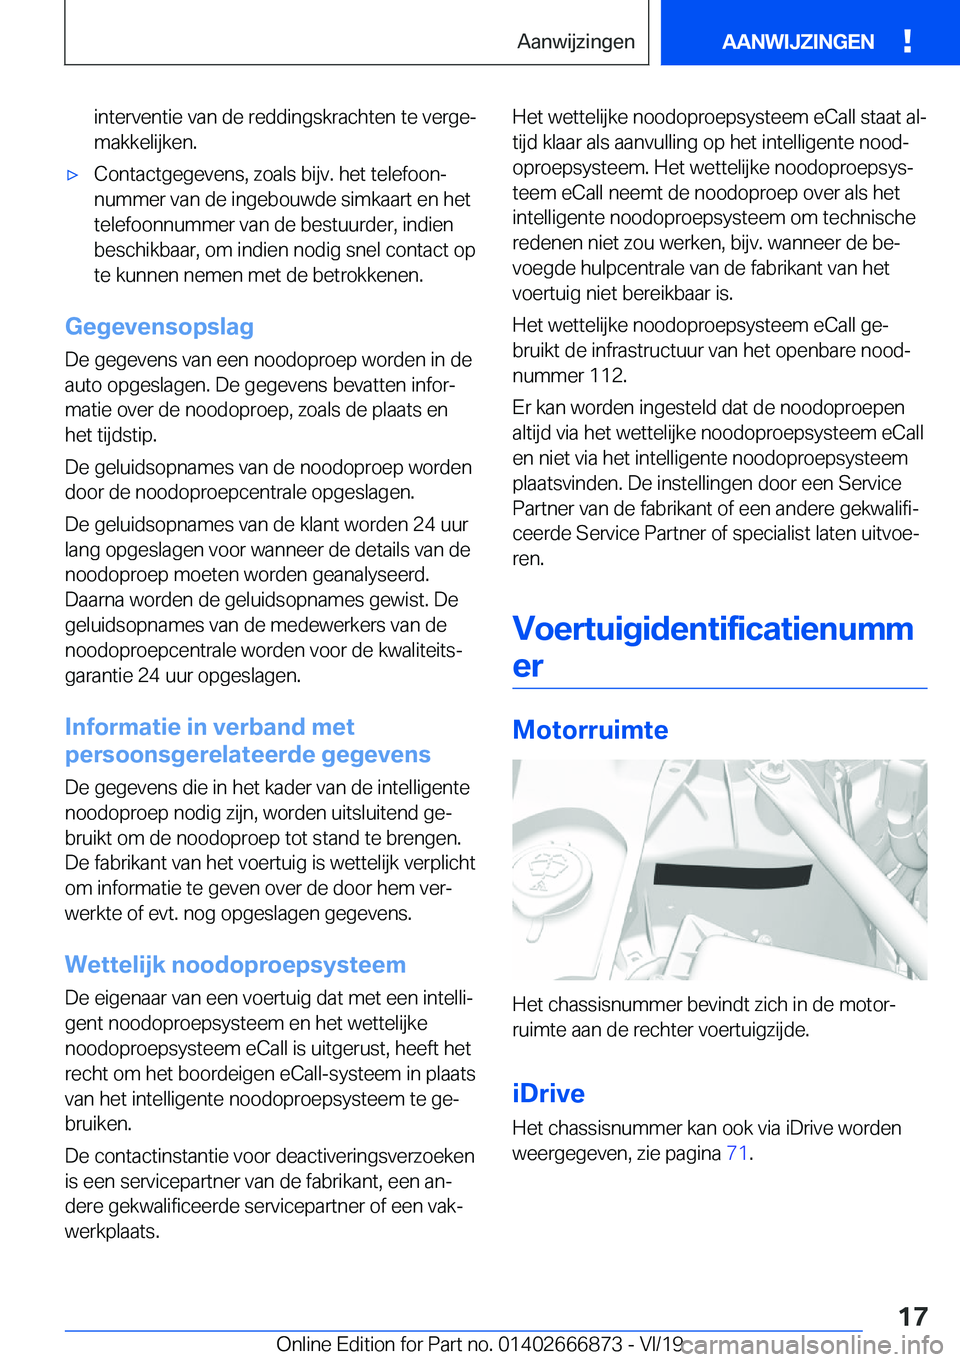 BMW X4 M 2020  Instructieboekjes (in Dutch) �i�n�t�e�r�v�e�n�t�i�e��v�a�n��d�e��r�e�d�d�i�n�g�s�k�r�a�c�h�t�e�n��t�e��v�e�r�g�ej
�m�a�k�k�e�l�i�j�k�e�n�.'x�C�o�n�t�a�c�t�g�e�g�e�v�e�n�s�,��z�o�a�l�s��b�i�j�v�.��h�e�t��t�e�l�e�f�o�